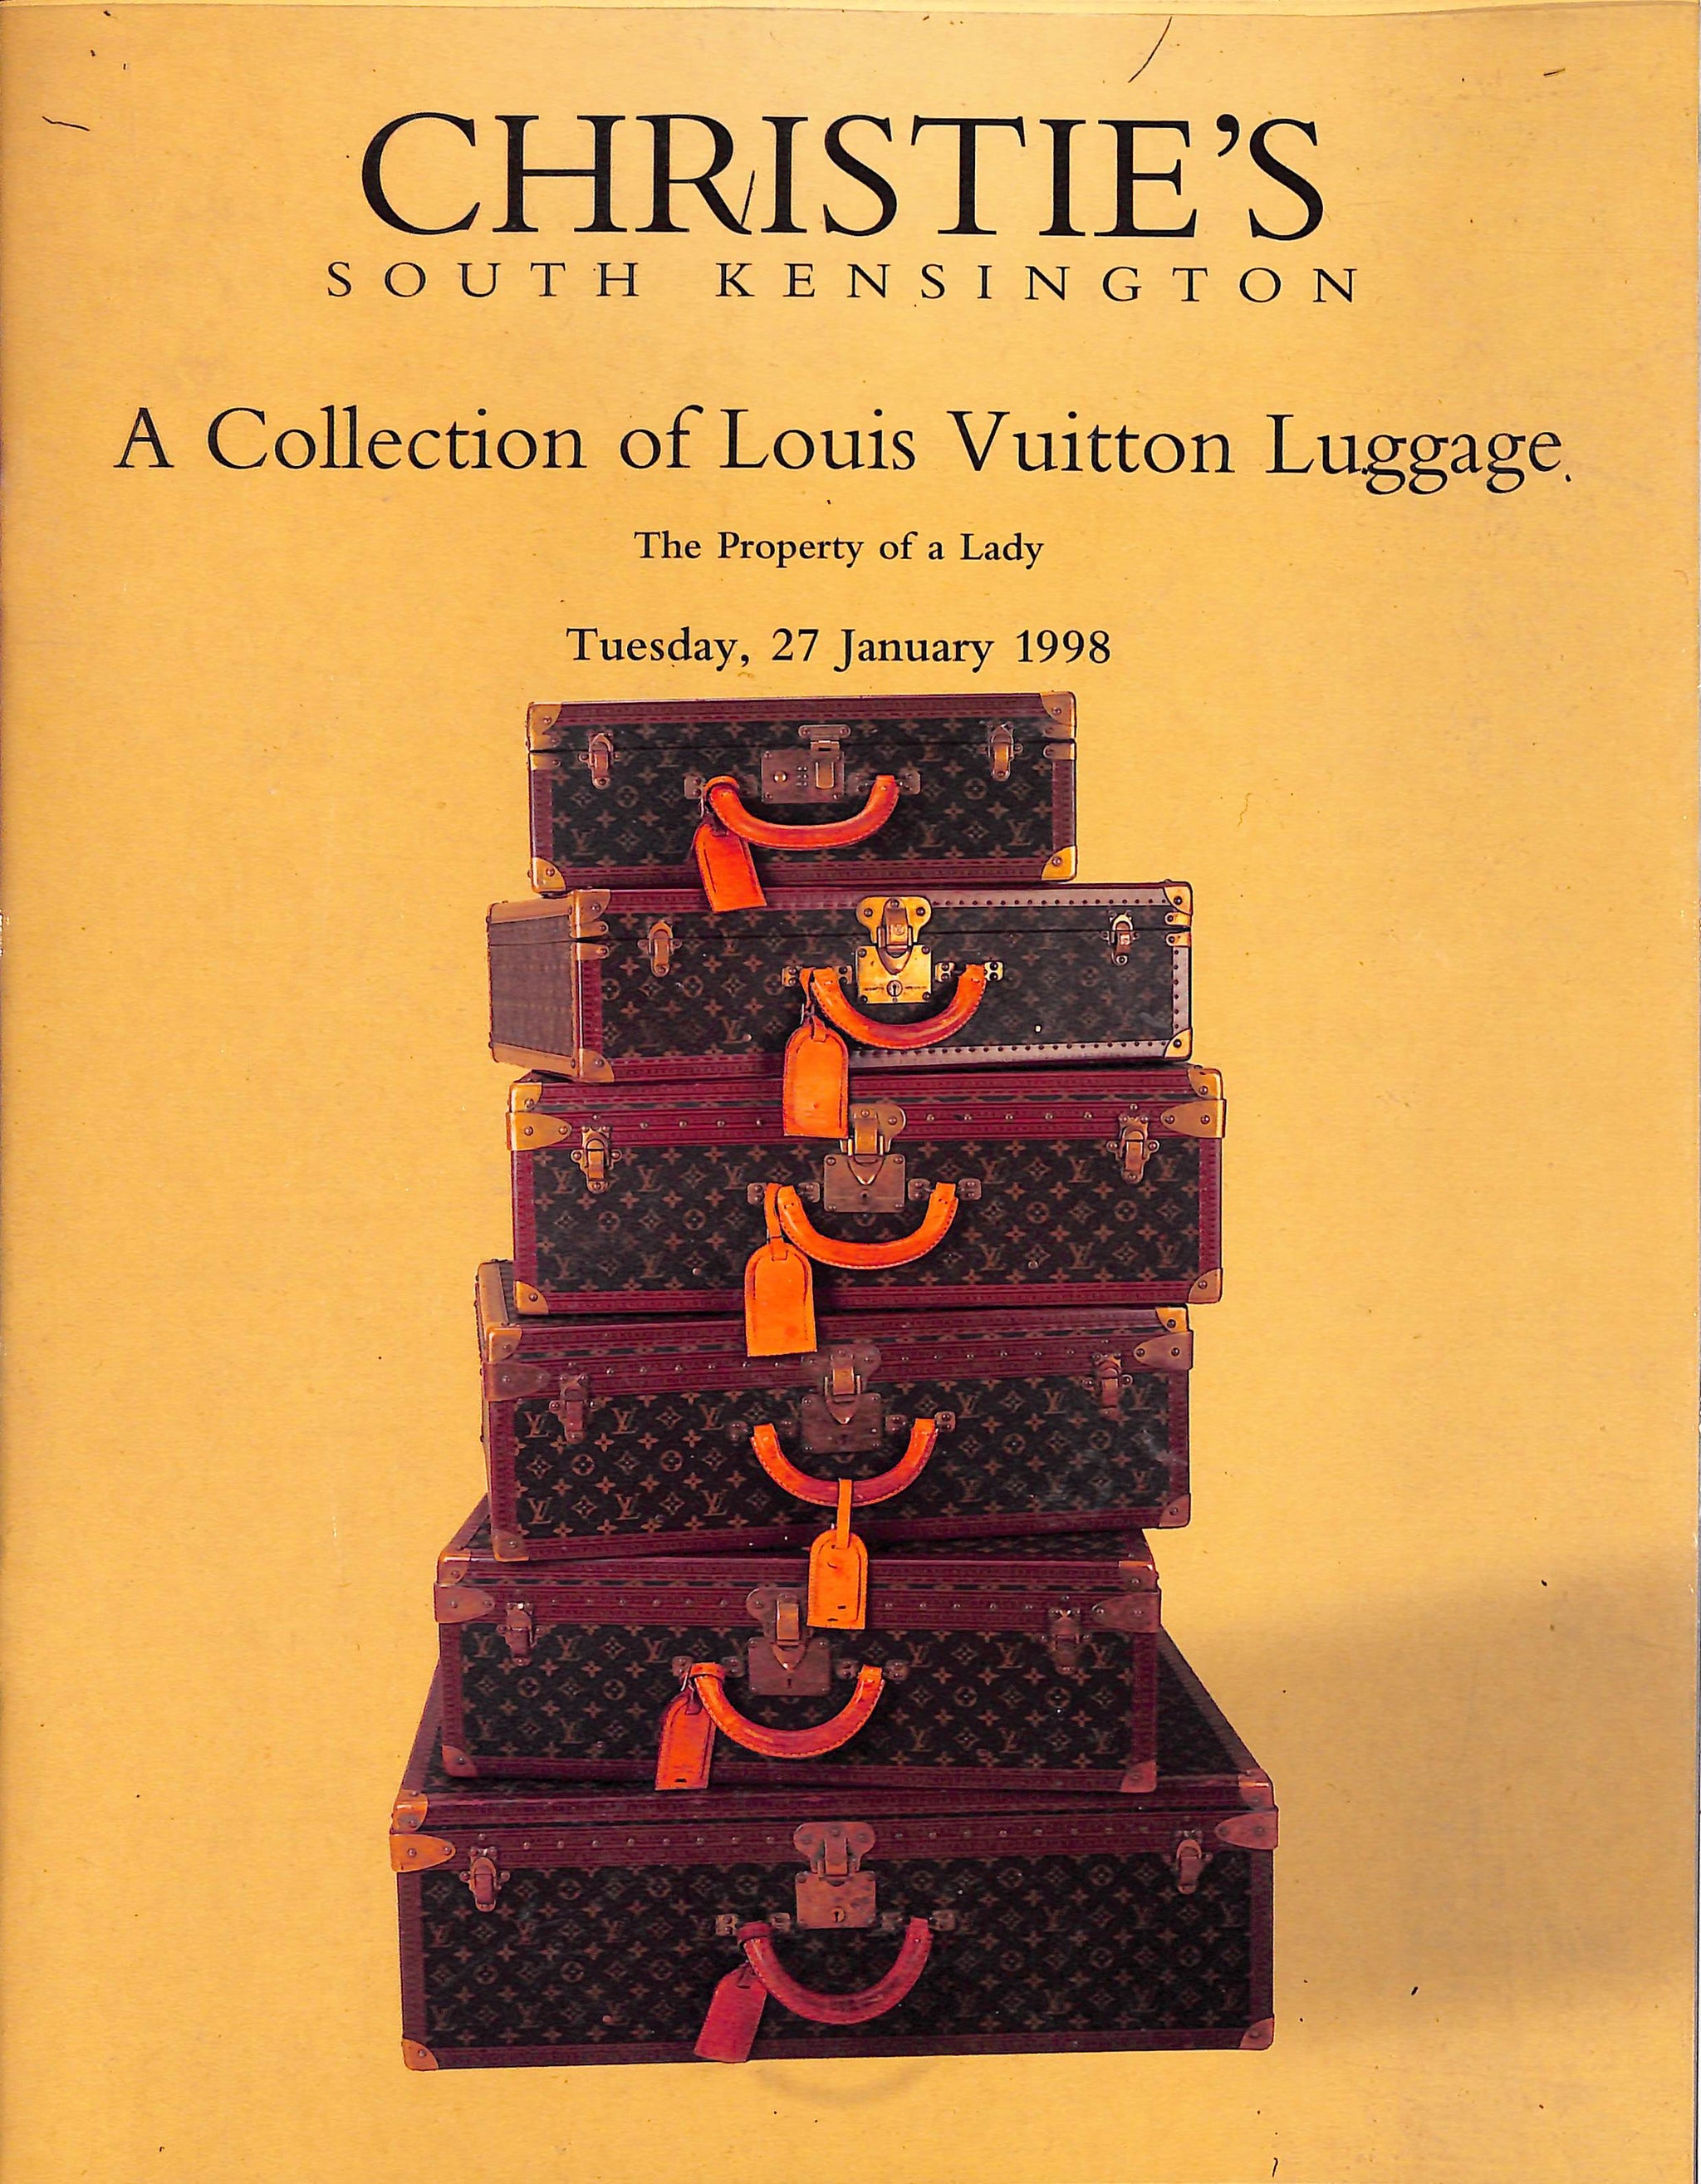 Volez Voguez Voyagez: Louis Vuitton - The Book Merchant Jenkins